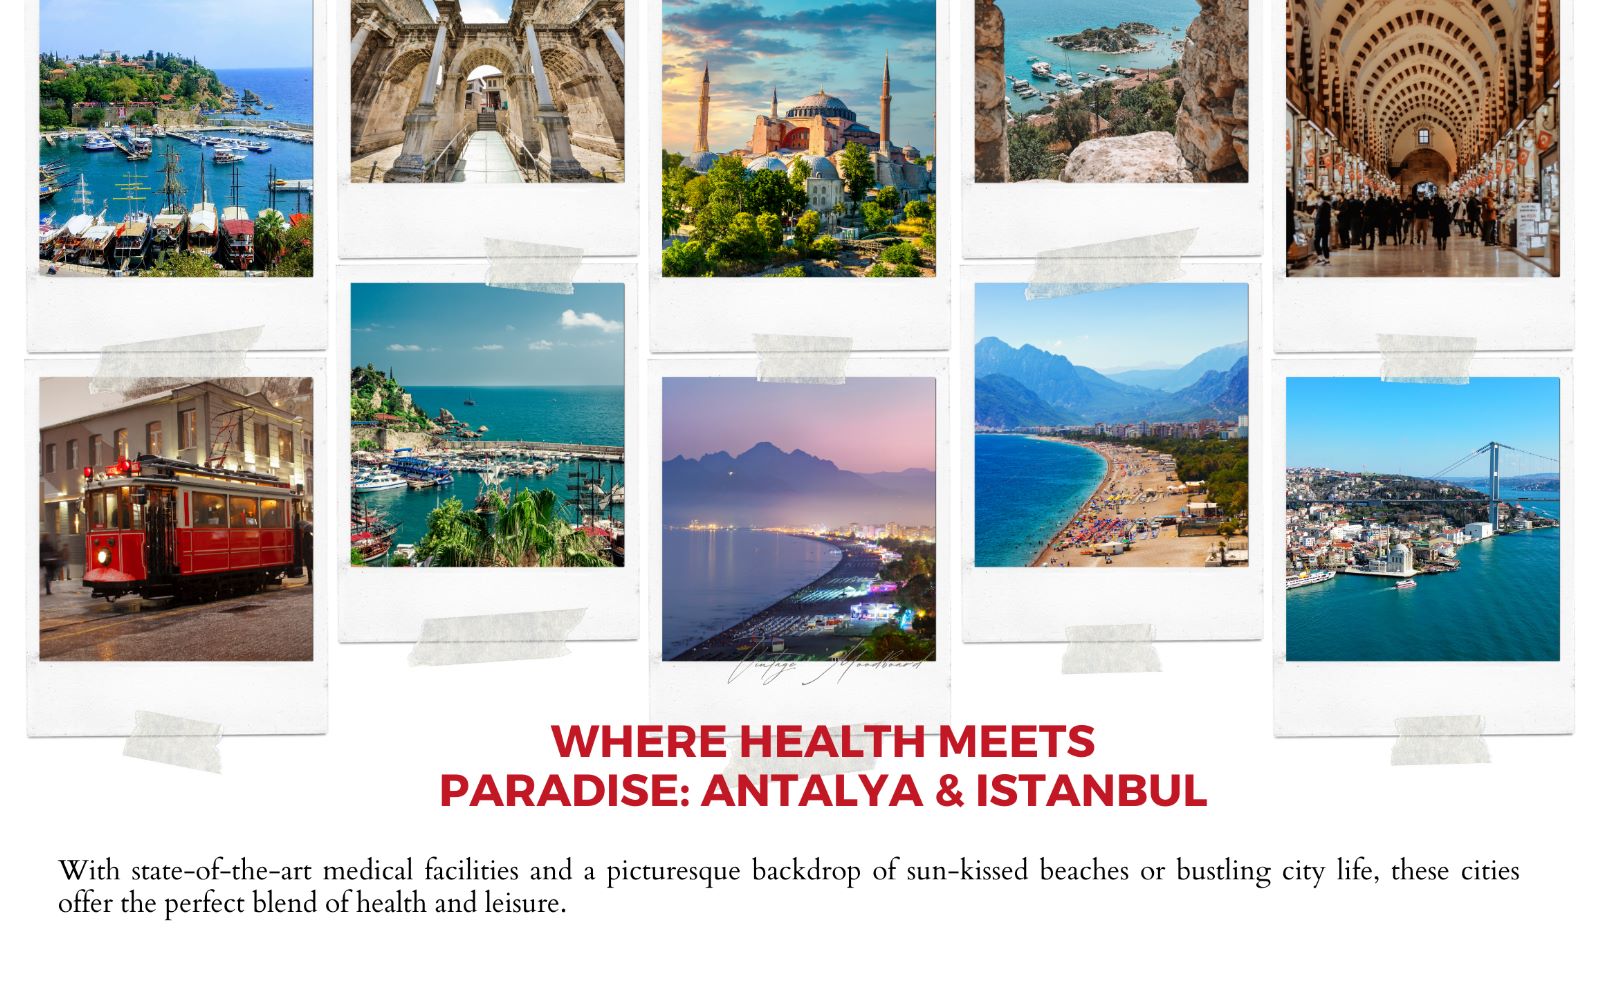 Sundhedsturismedestinationer i Tyrkiet - Antalya og Istanbul